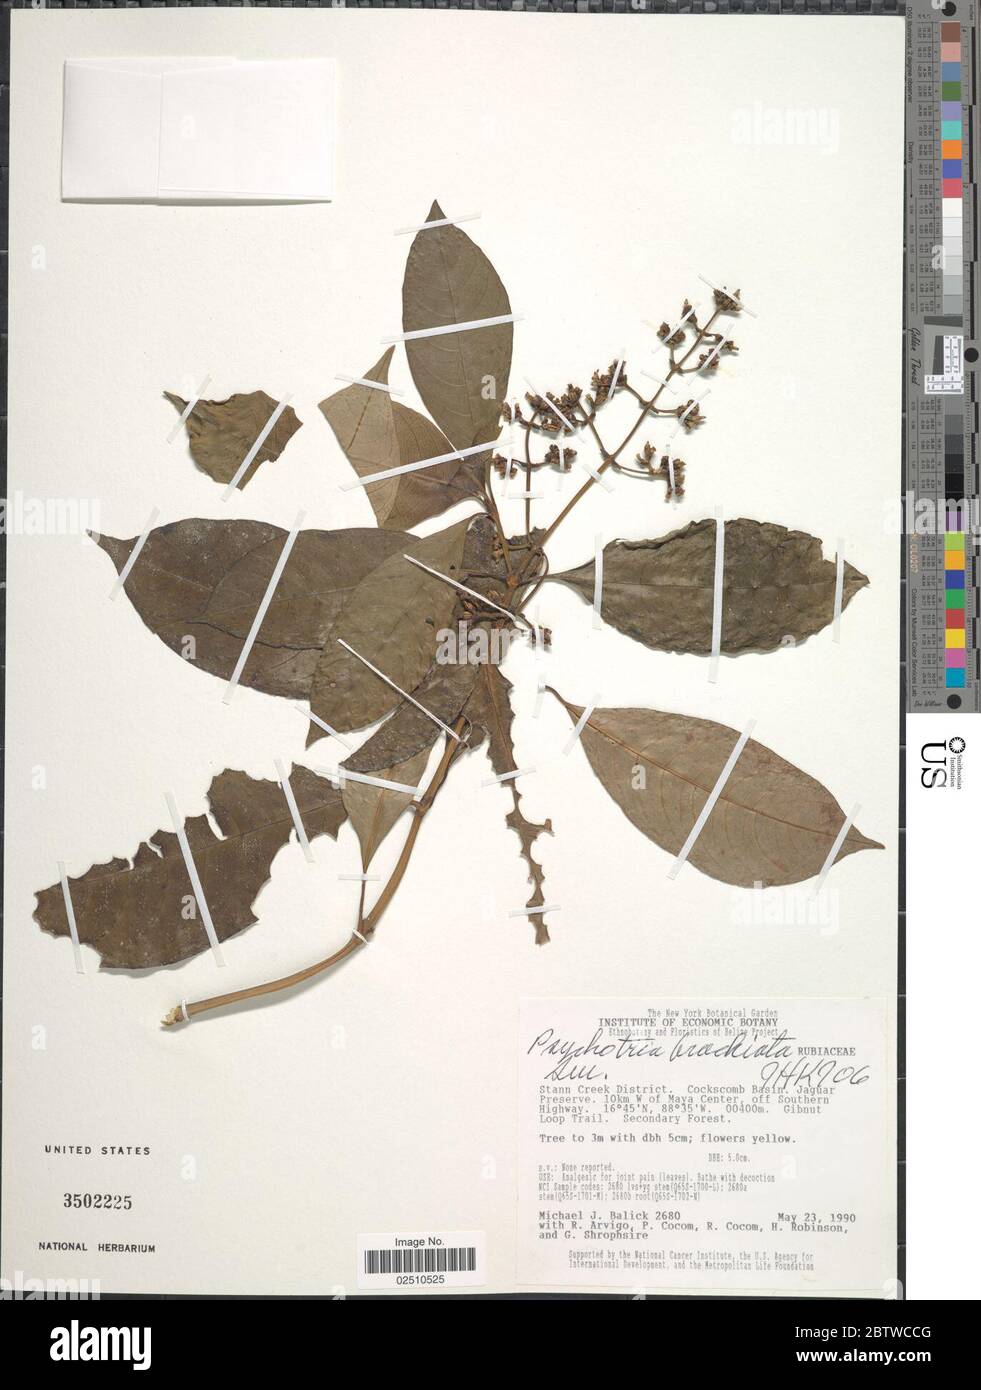 Psychotria brachiata Sw. Stock Photo